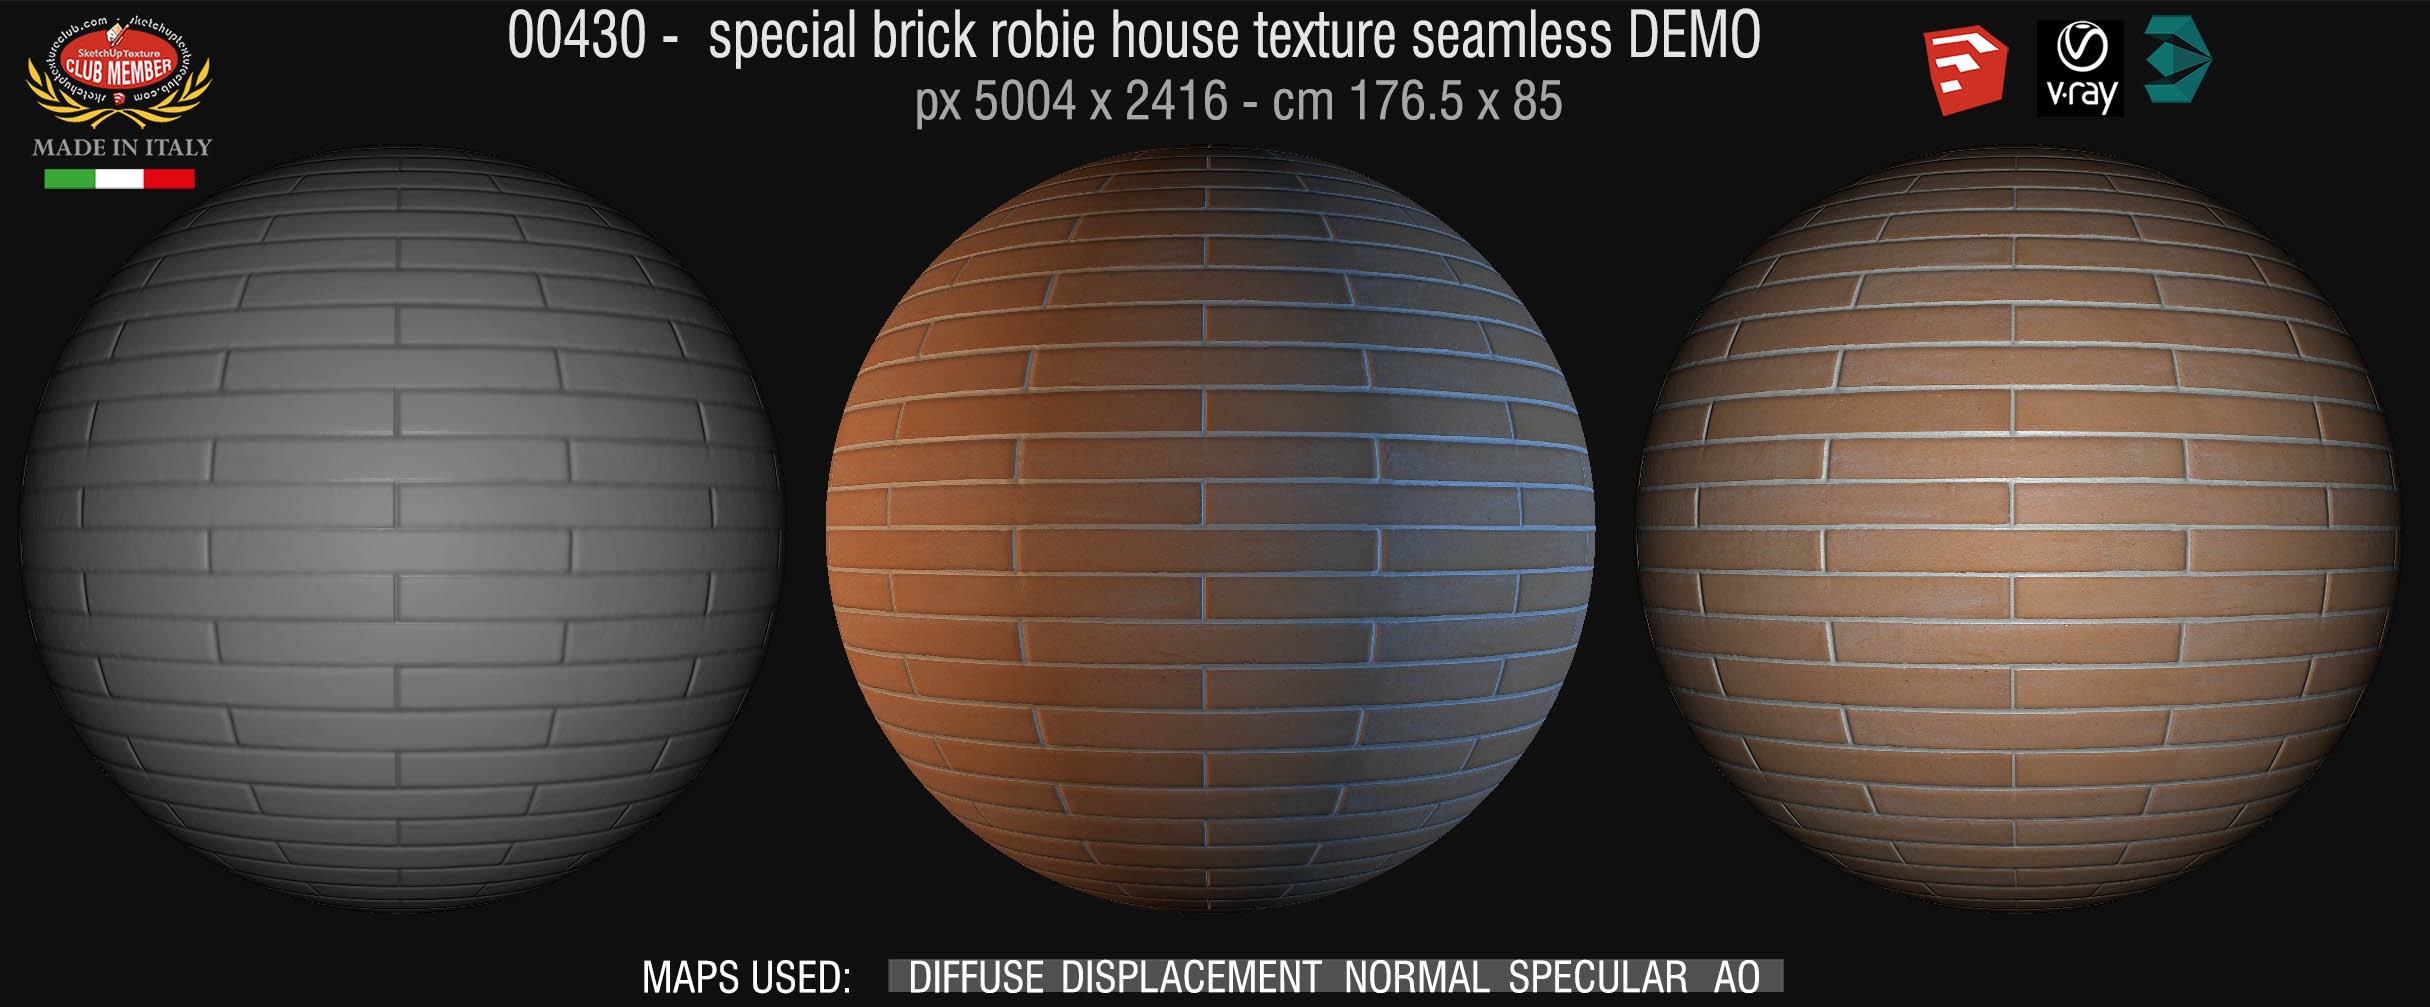 00430 special brick robie house texture seamless + maps DEMO